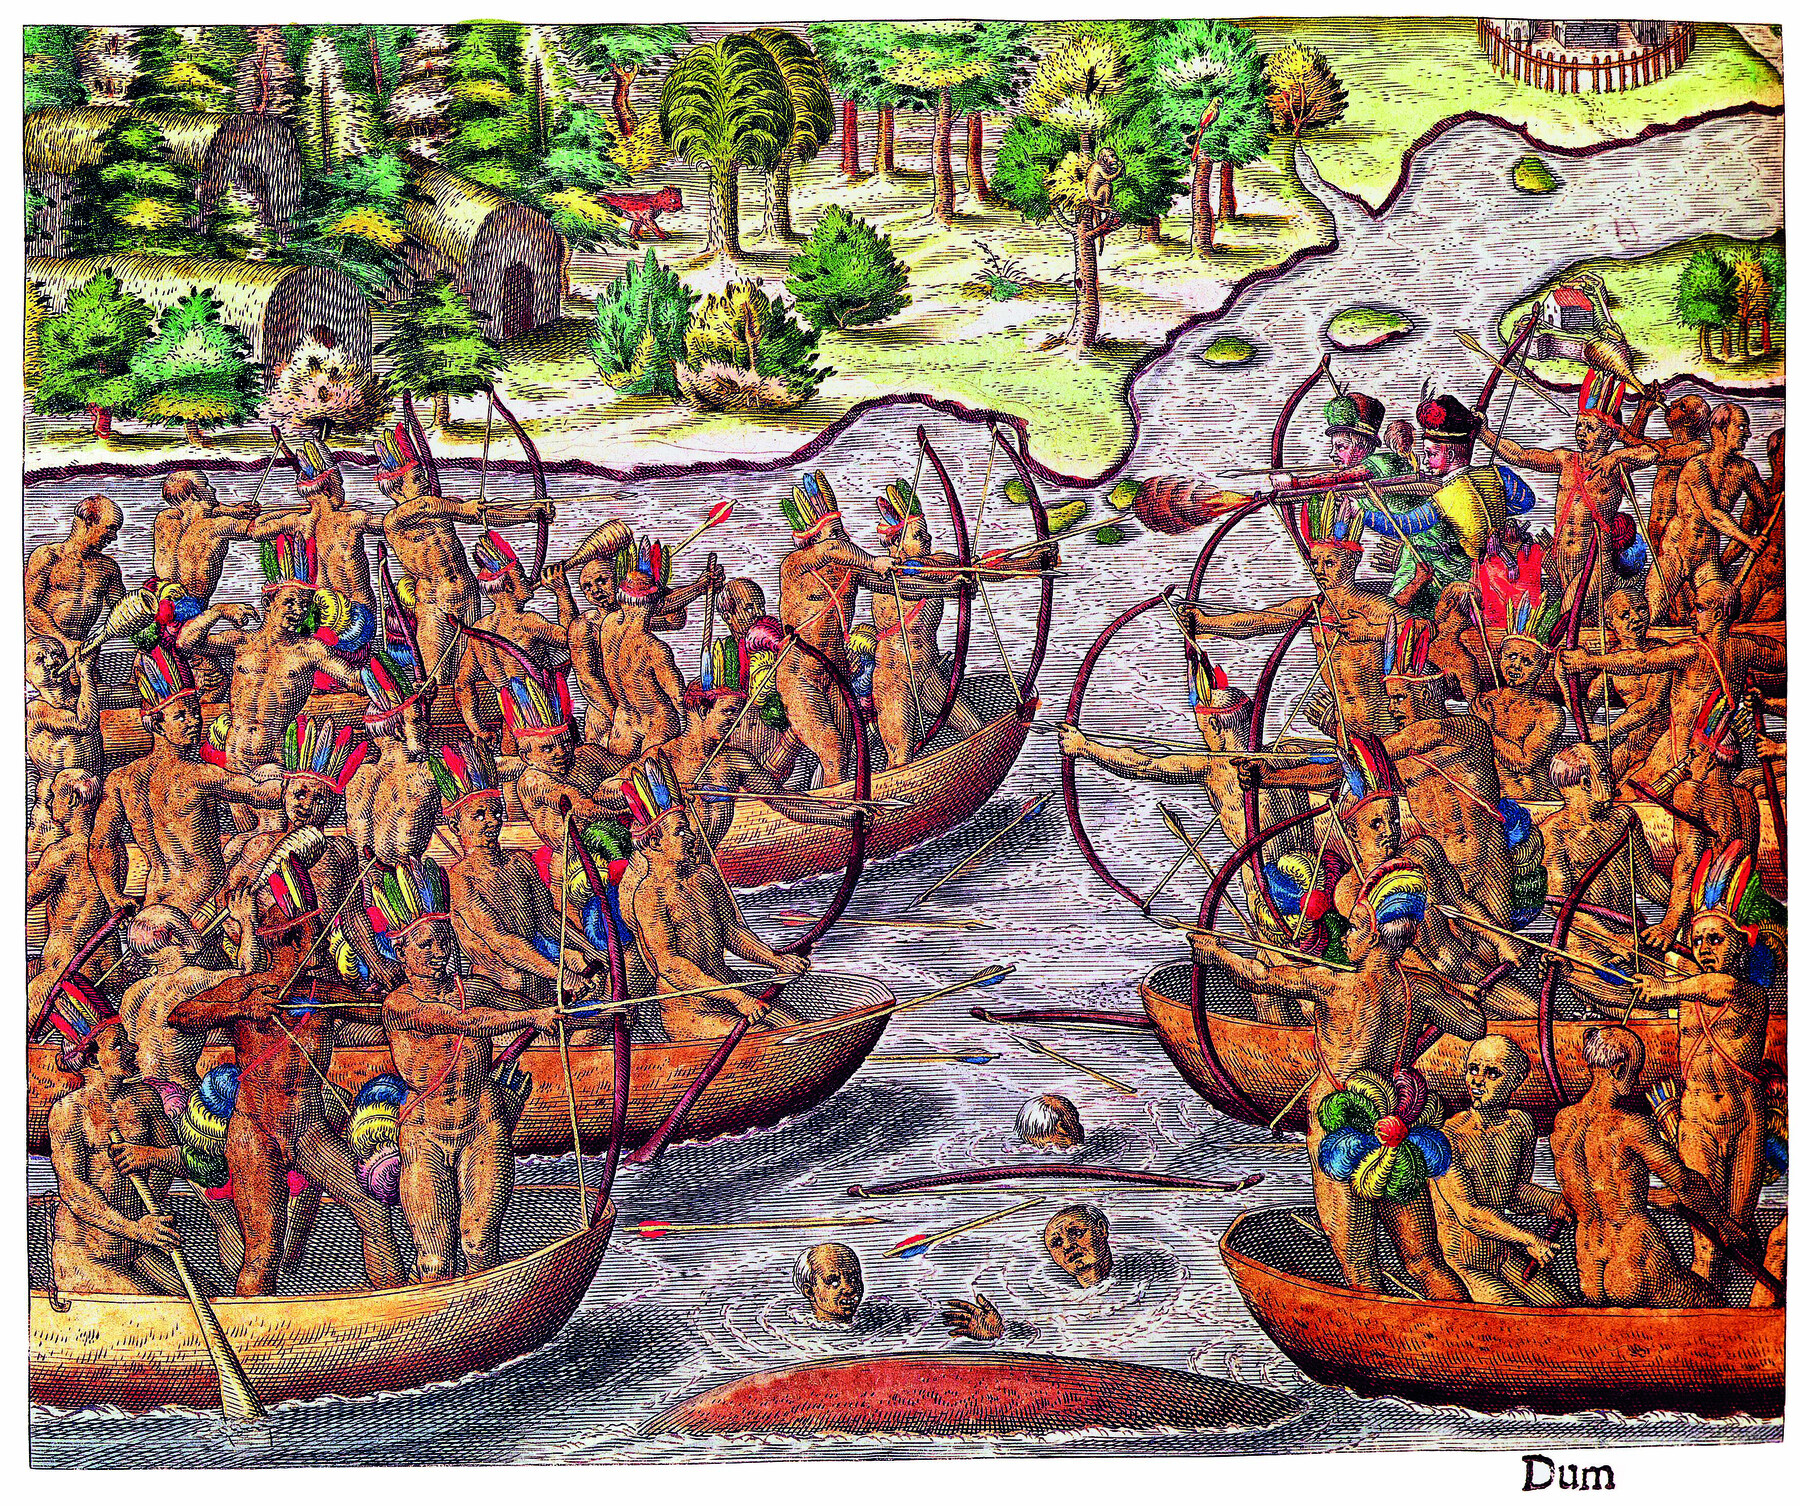 Gravura. Dois grupos de pessoas indígenas em uma batalha no rio. Elas estão agrupadas em canoas. A maioria tem arco e flecha. Alguns corpos estão boiando no rio.